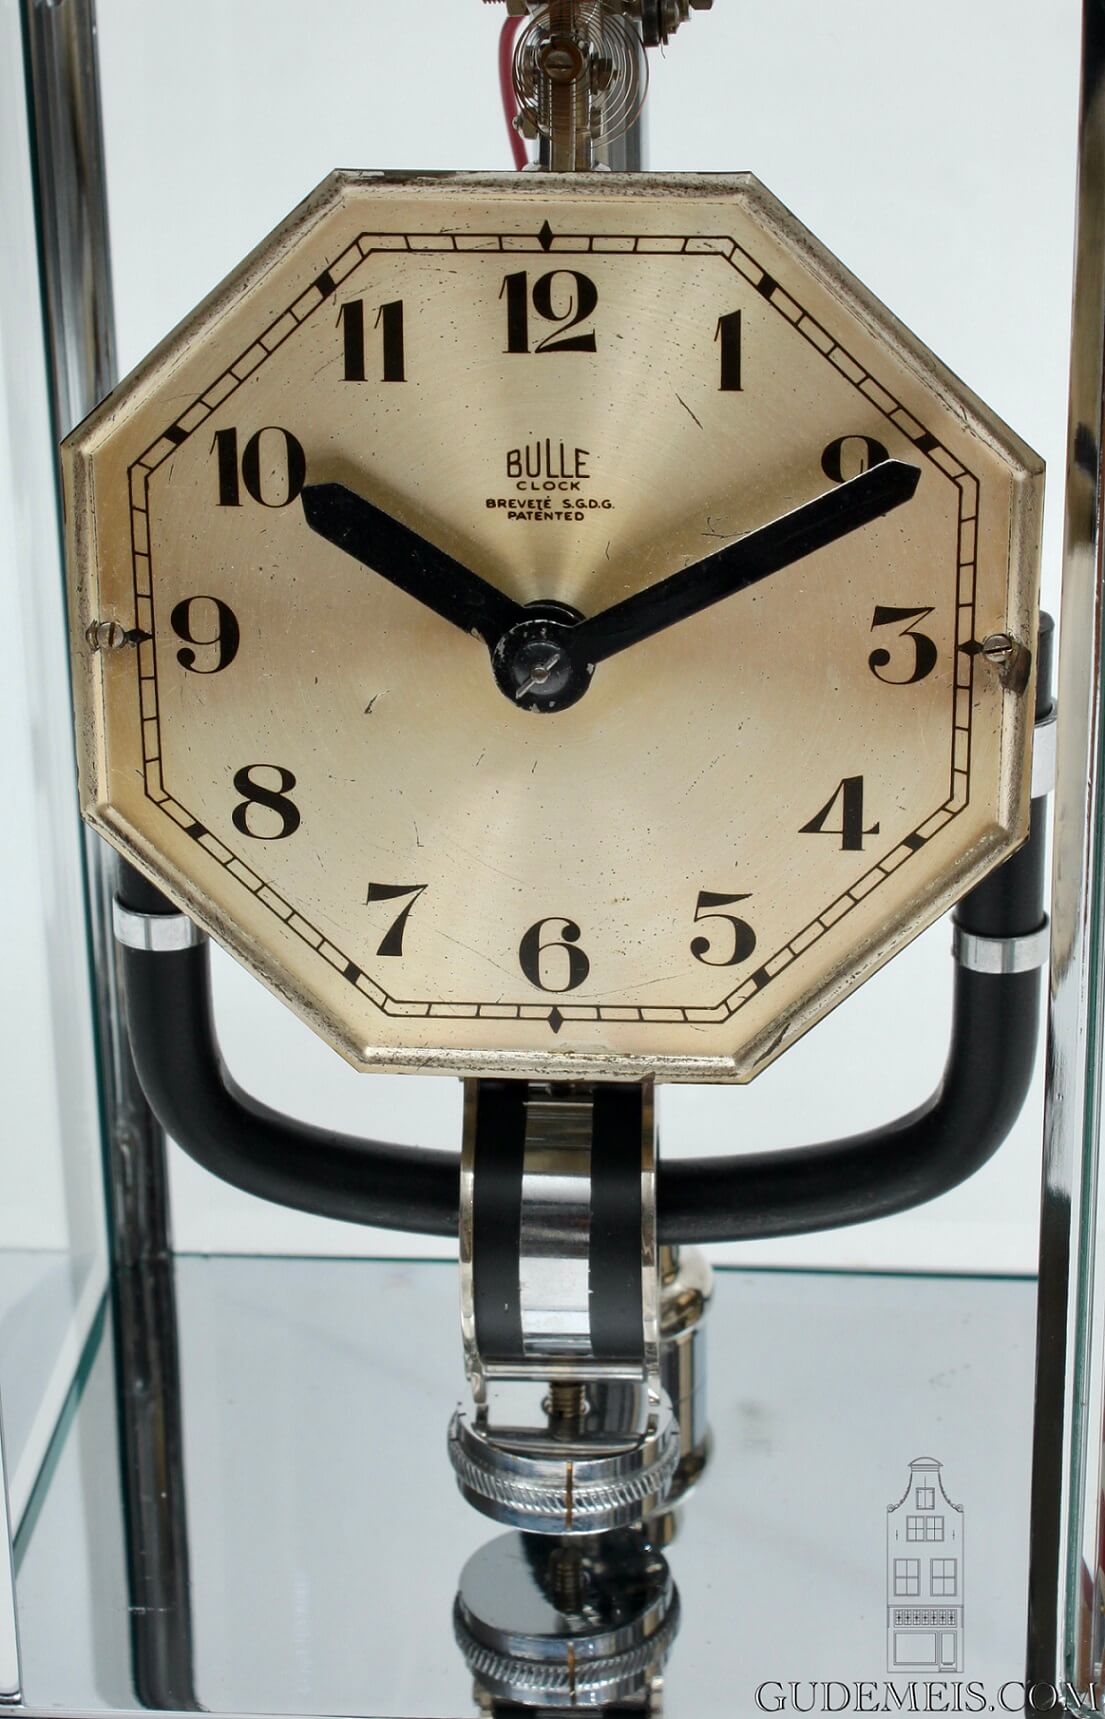  Bulle Clock Suspension New